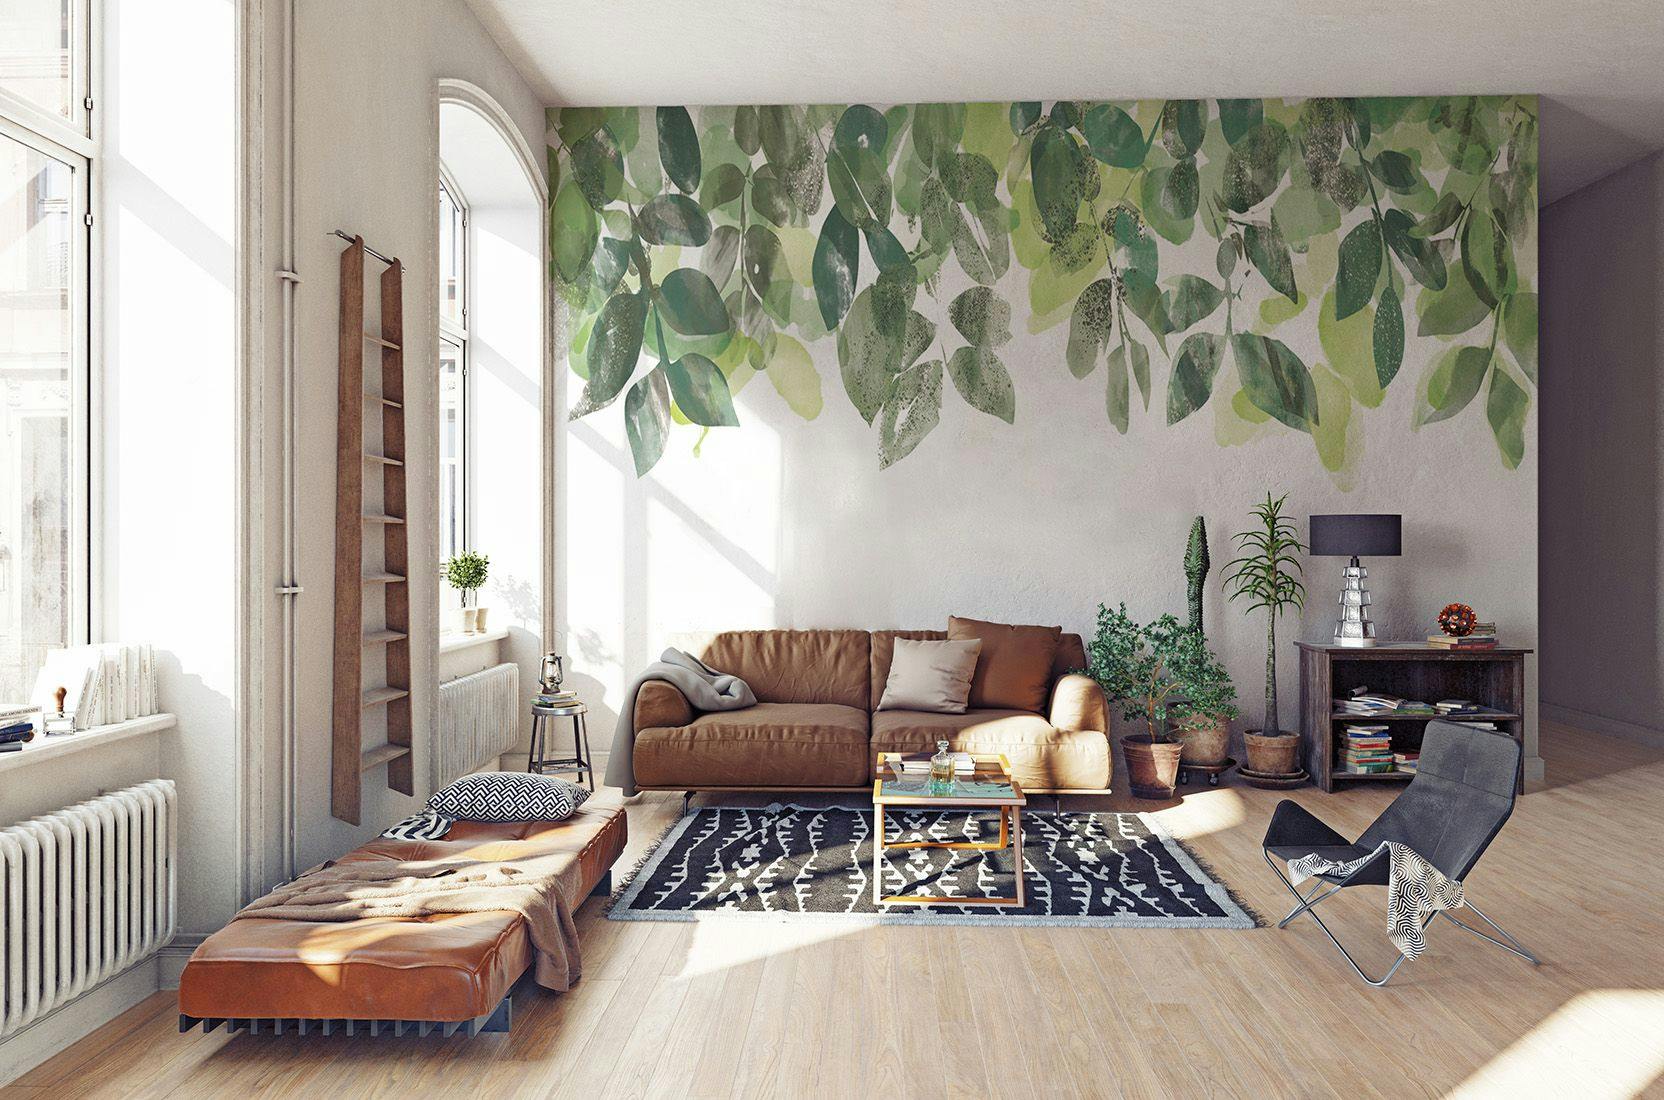 Fototapeta na ścianę z liśćmi, które rozjaśnią każdy pokój żywiołowym kolorem i ciekawym projektem.